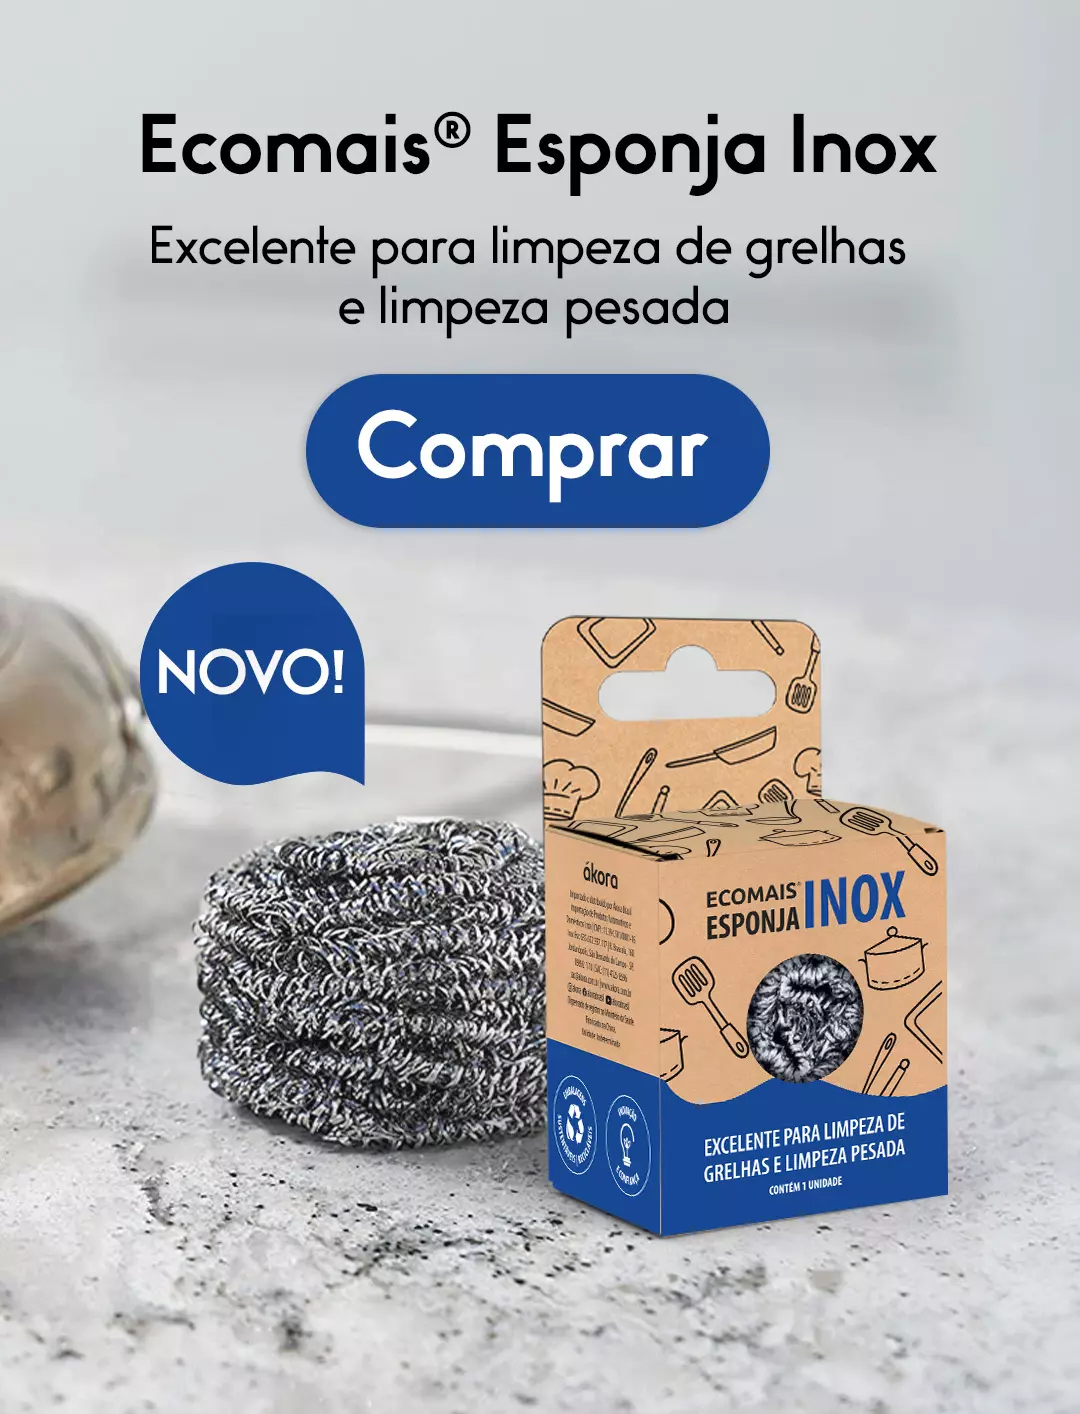 ecomais-esponja-inox-akora-brasil-2023-11-16-mobile